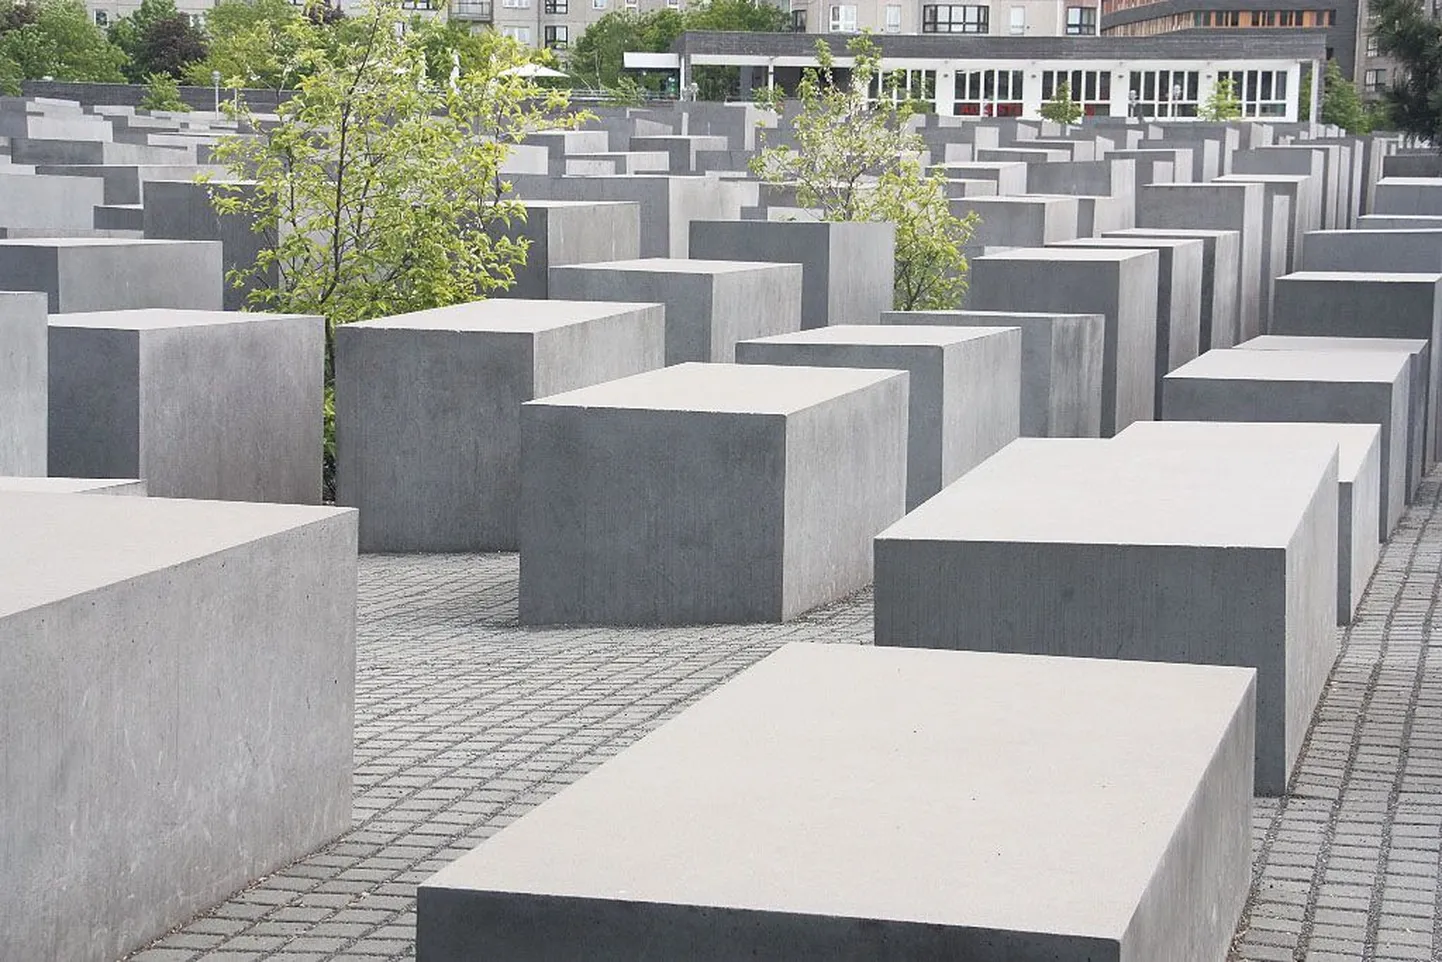 Mälestusmärk “Stelenfeld” (avatud 2005) Euroopas mõrvatud juutidele Berliinis Brandenburgi värava läheduses. Siin mälestatakse kuni kuut miljonit natsionaalsotsialistide ohvrit. Mälestuskompleksi autor on Peter Eiseman, maa all on informatsioonikeskus, kuhu on huvilistel vaba sissepääs. Püsinäitus räägib Eesti juutide saatusestki.